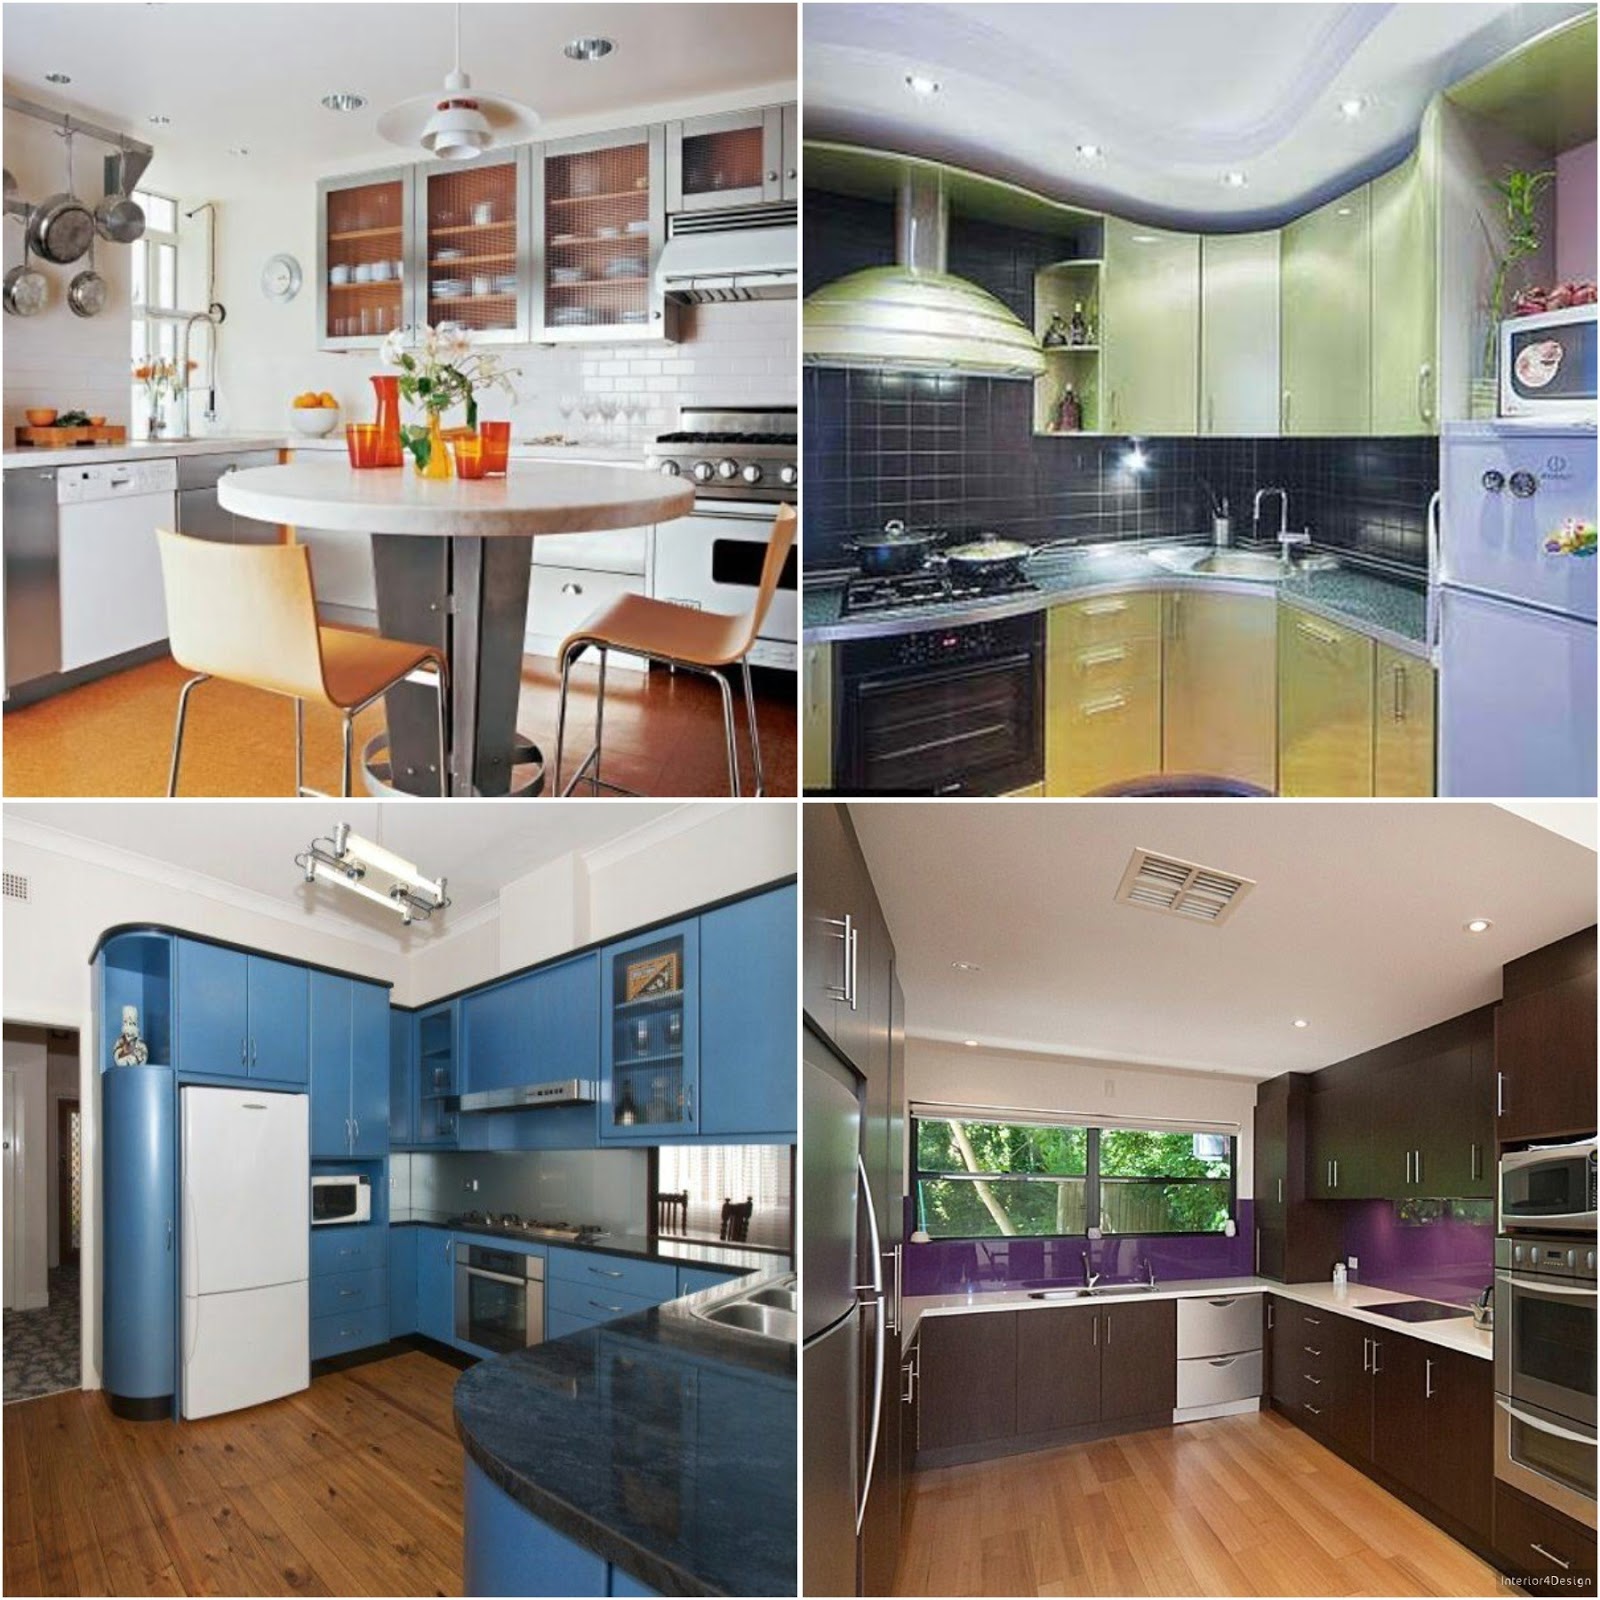 Kitchen Design Ideas 3*3 And 2*3 m2 Small Kitchens | Best Interior